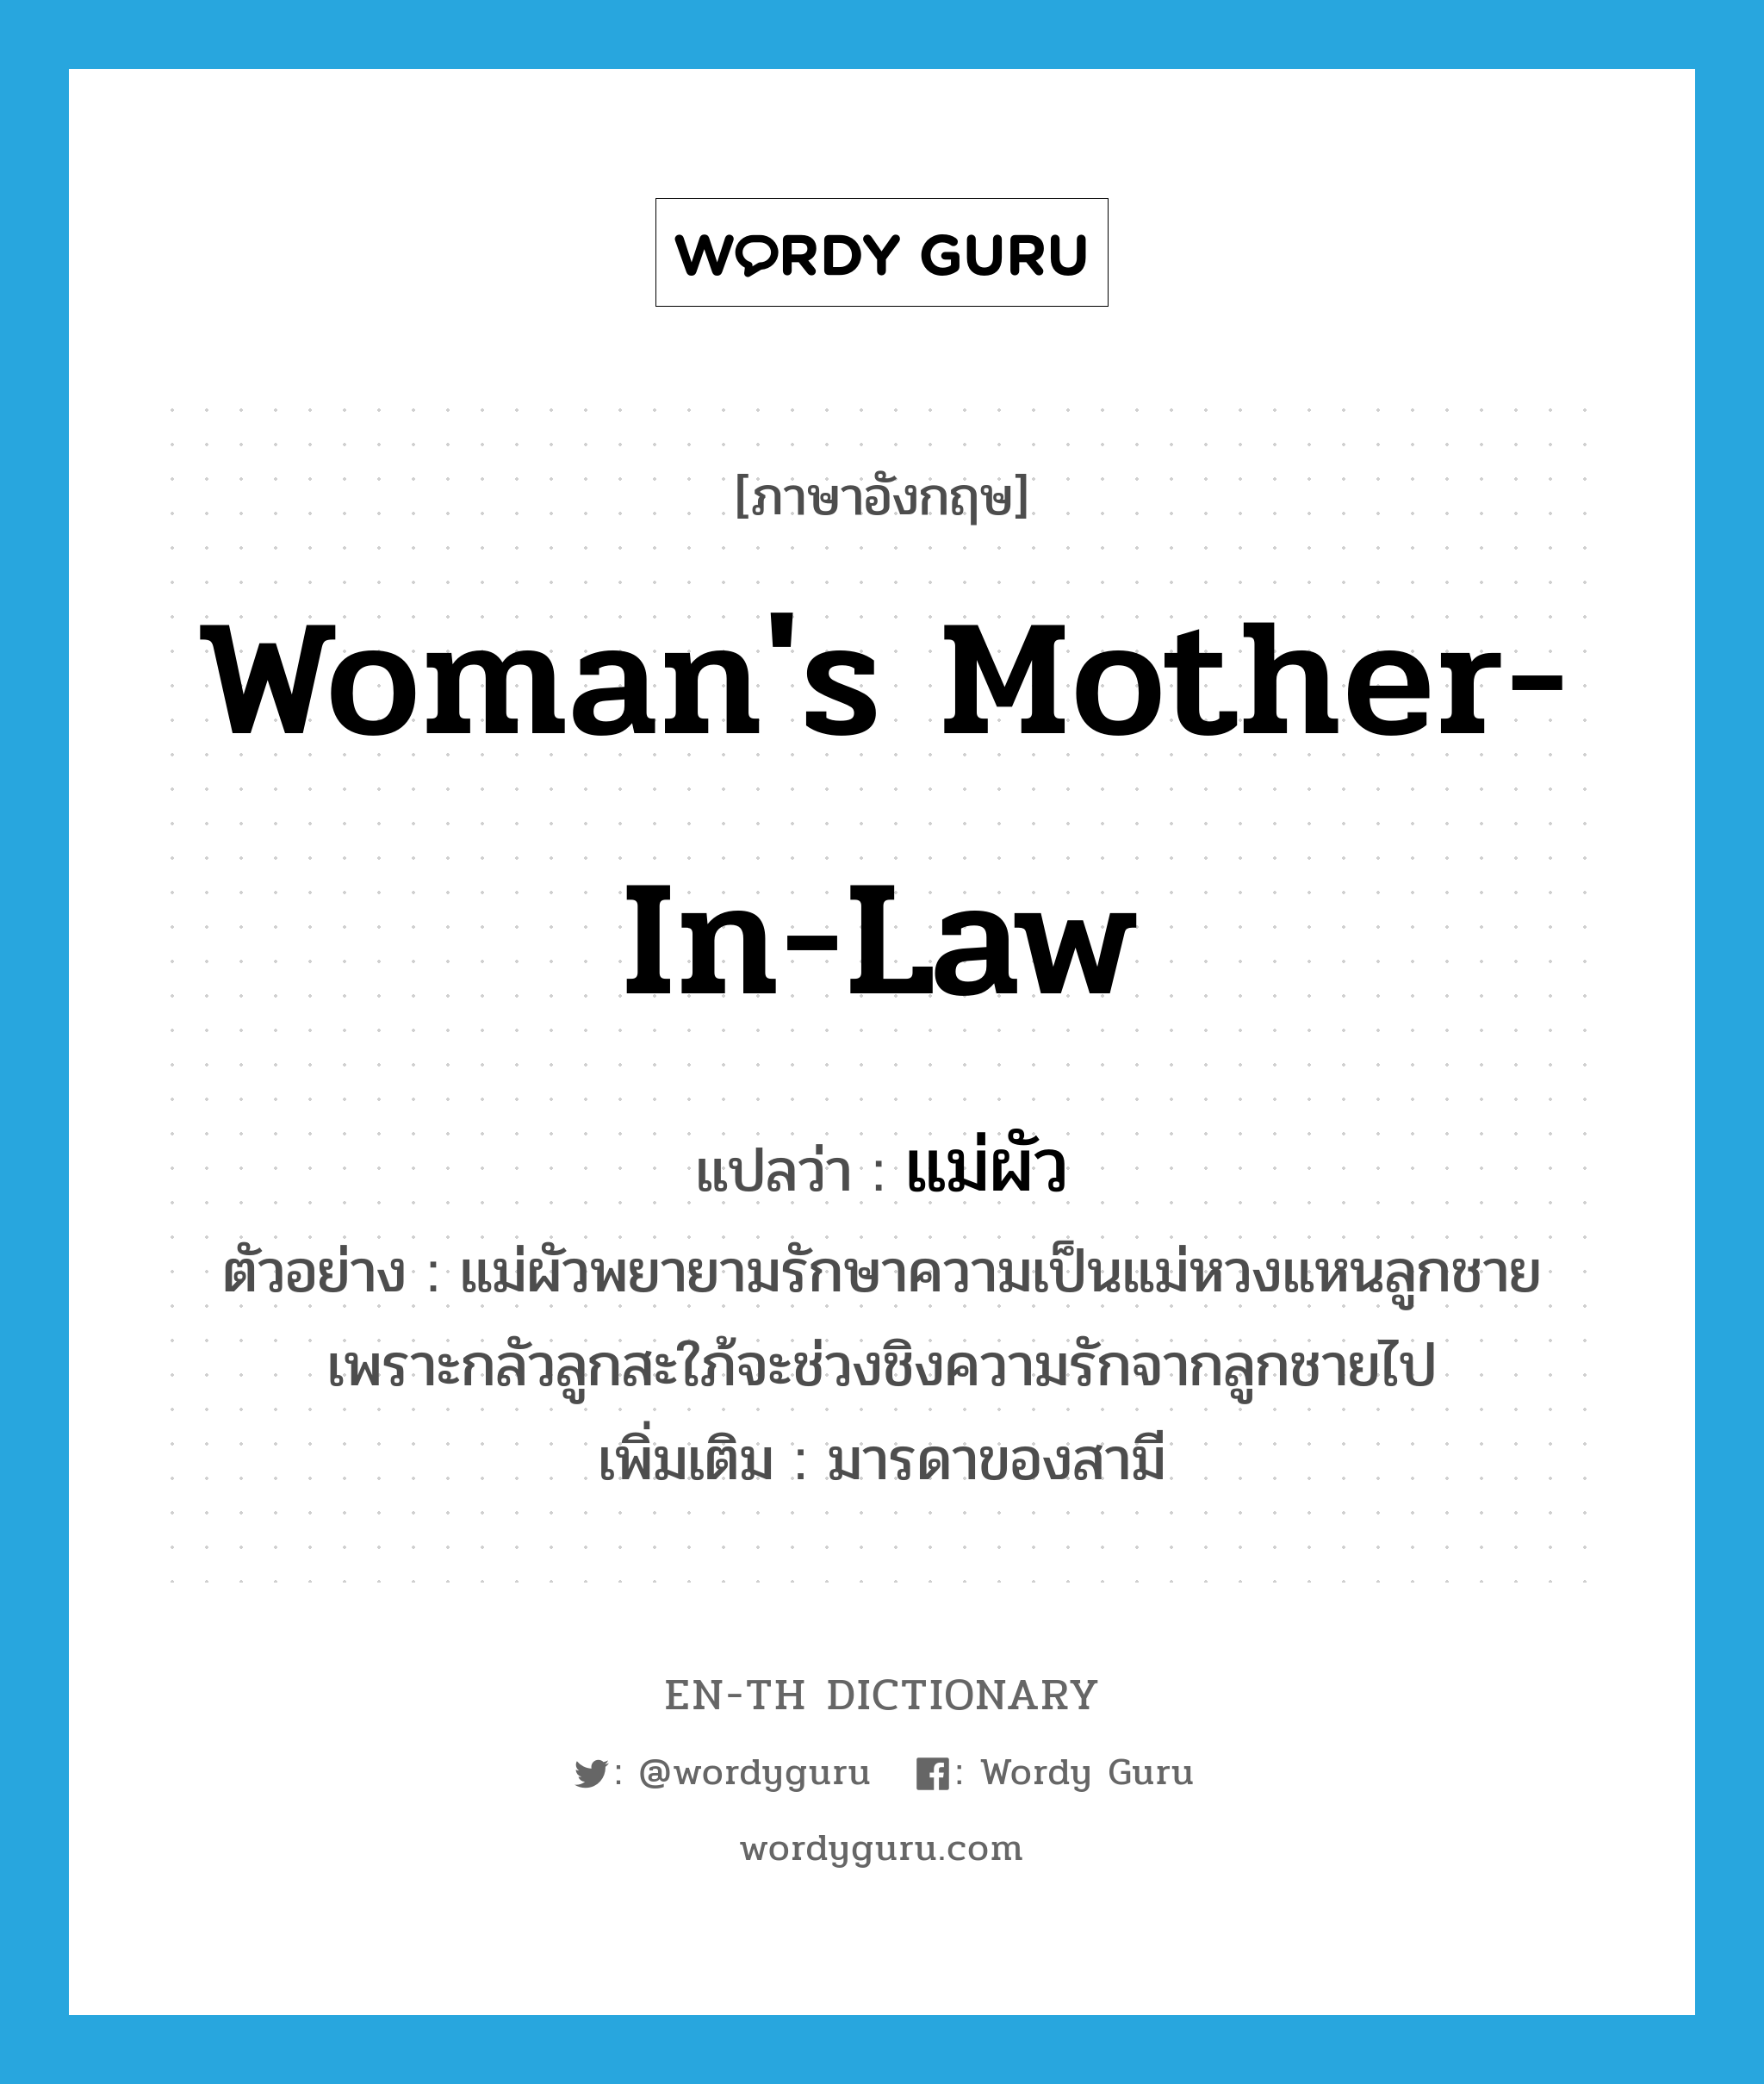 แม่ผัว ภาษาอังกฤษ? | Wordy Guru